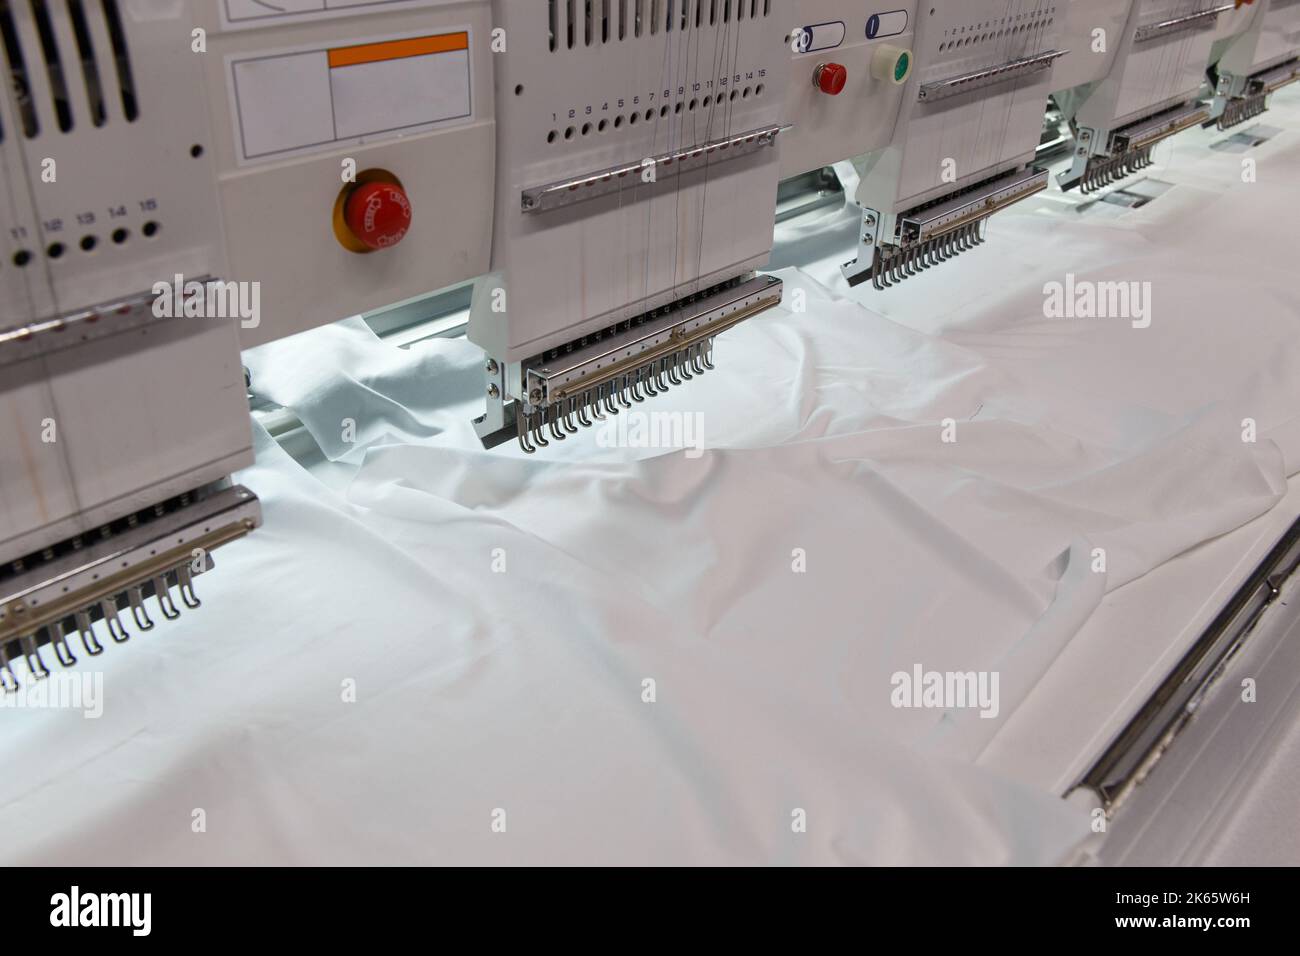 Maschinenstickerei ist ein Stickprozess, bei dem eine Nähmaschine oder Stickmaschine verwendet wird, um Muster auf Textilien zu erstellen. Textil: Industriell Stockfoto